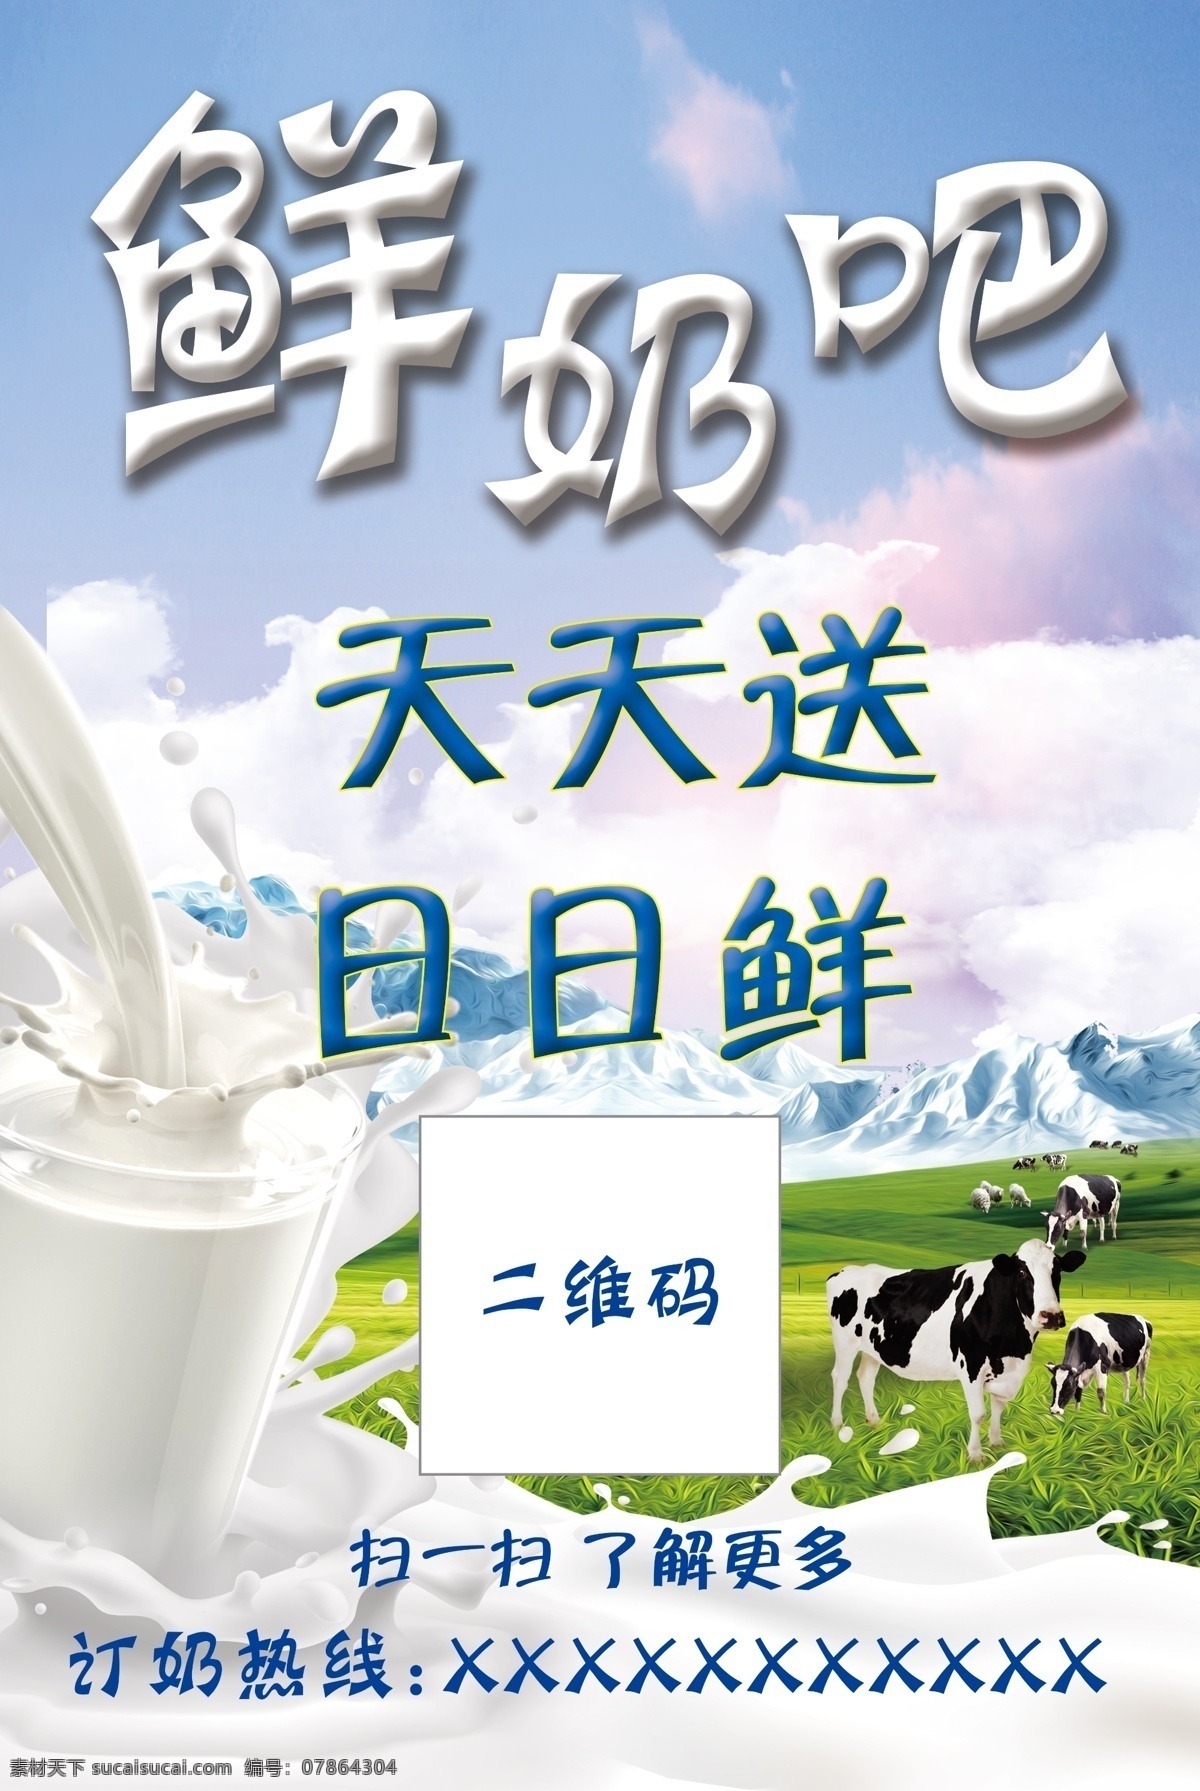 鲜奶吧 鲜奶 新鲜 牛奶 奶牛 草原 牧场 美食